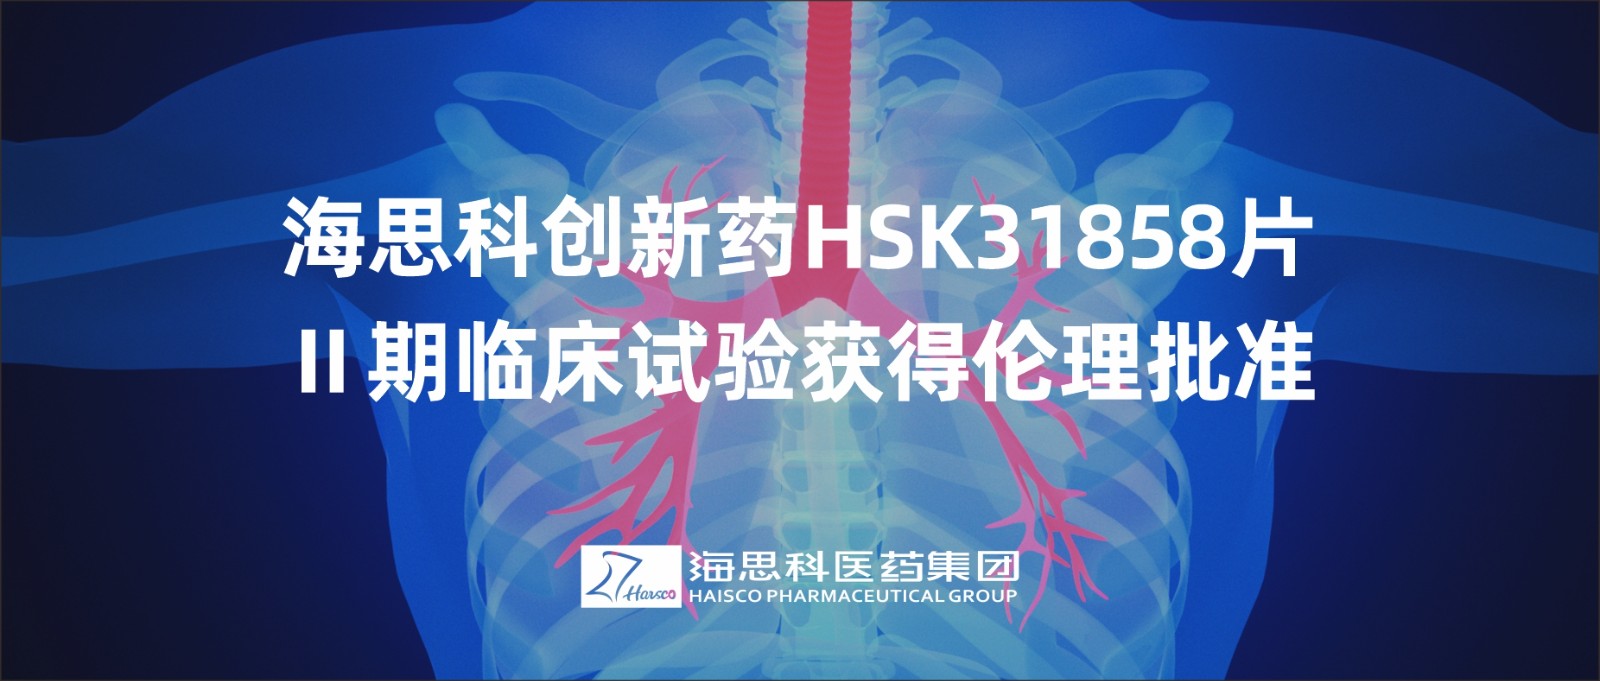 海思科创新药HSK31858片Ⅱ期临床试验获得伦理批准